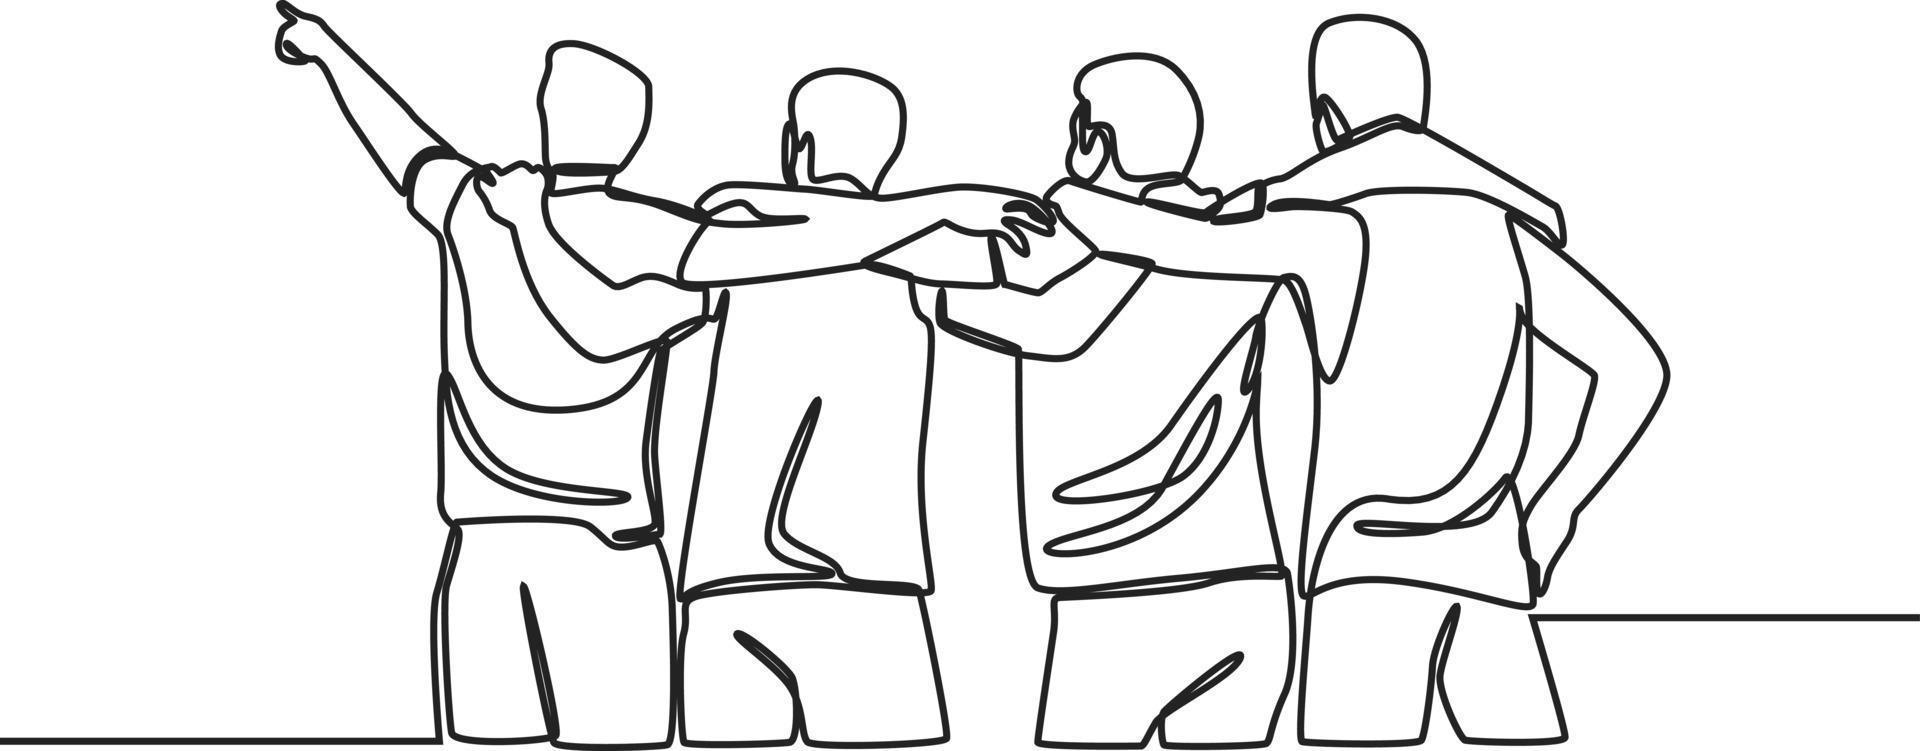 un disegno a linea continua di un gruppo di uomini in piedi insieme per mostrare il loro legame di amicizia. giornata dell'amicizia. illustrazione grafica vettoriale di disegno a linea singola.